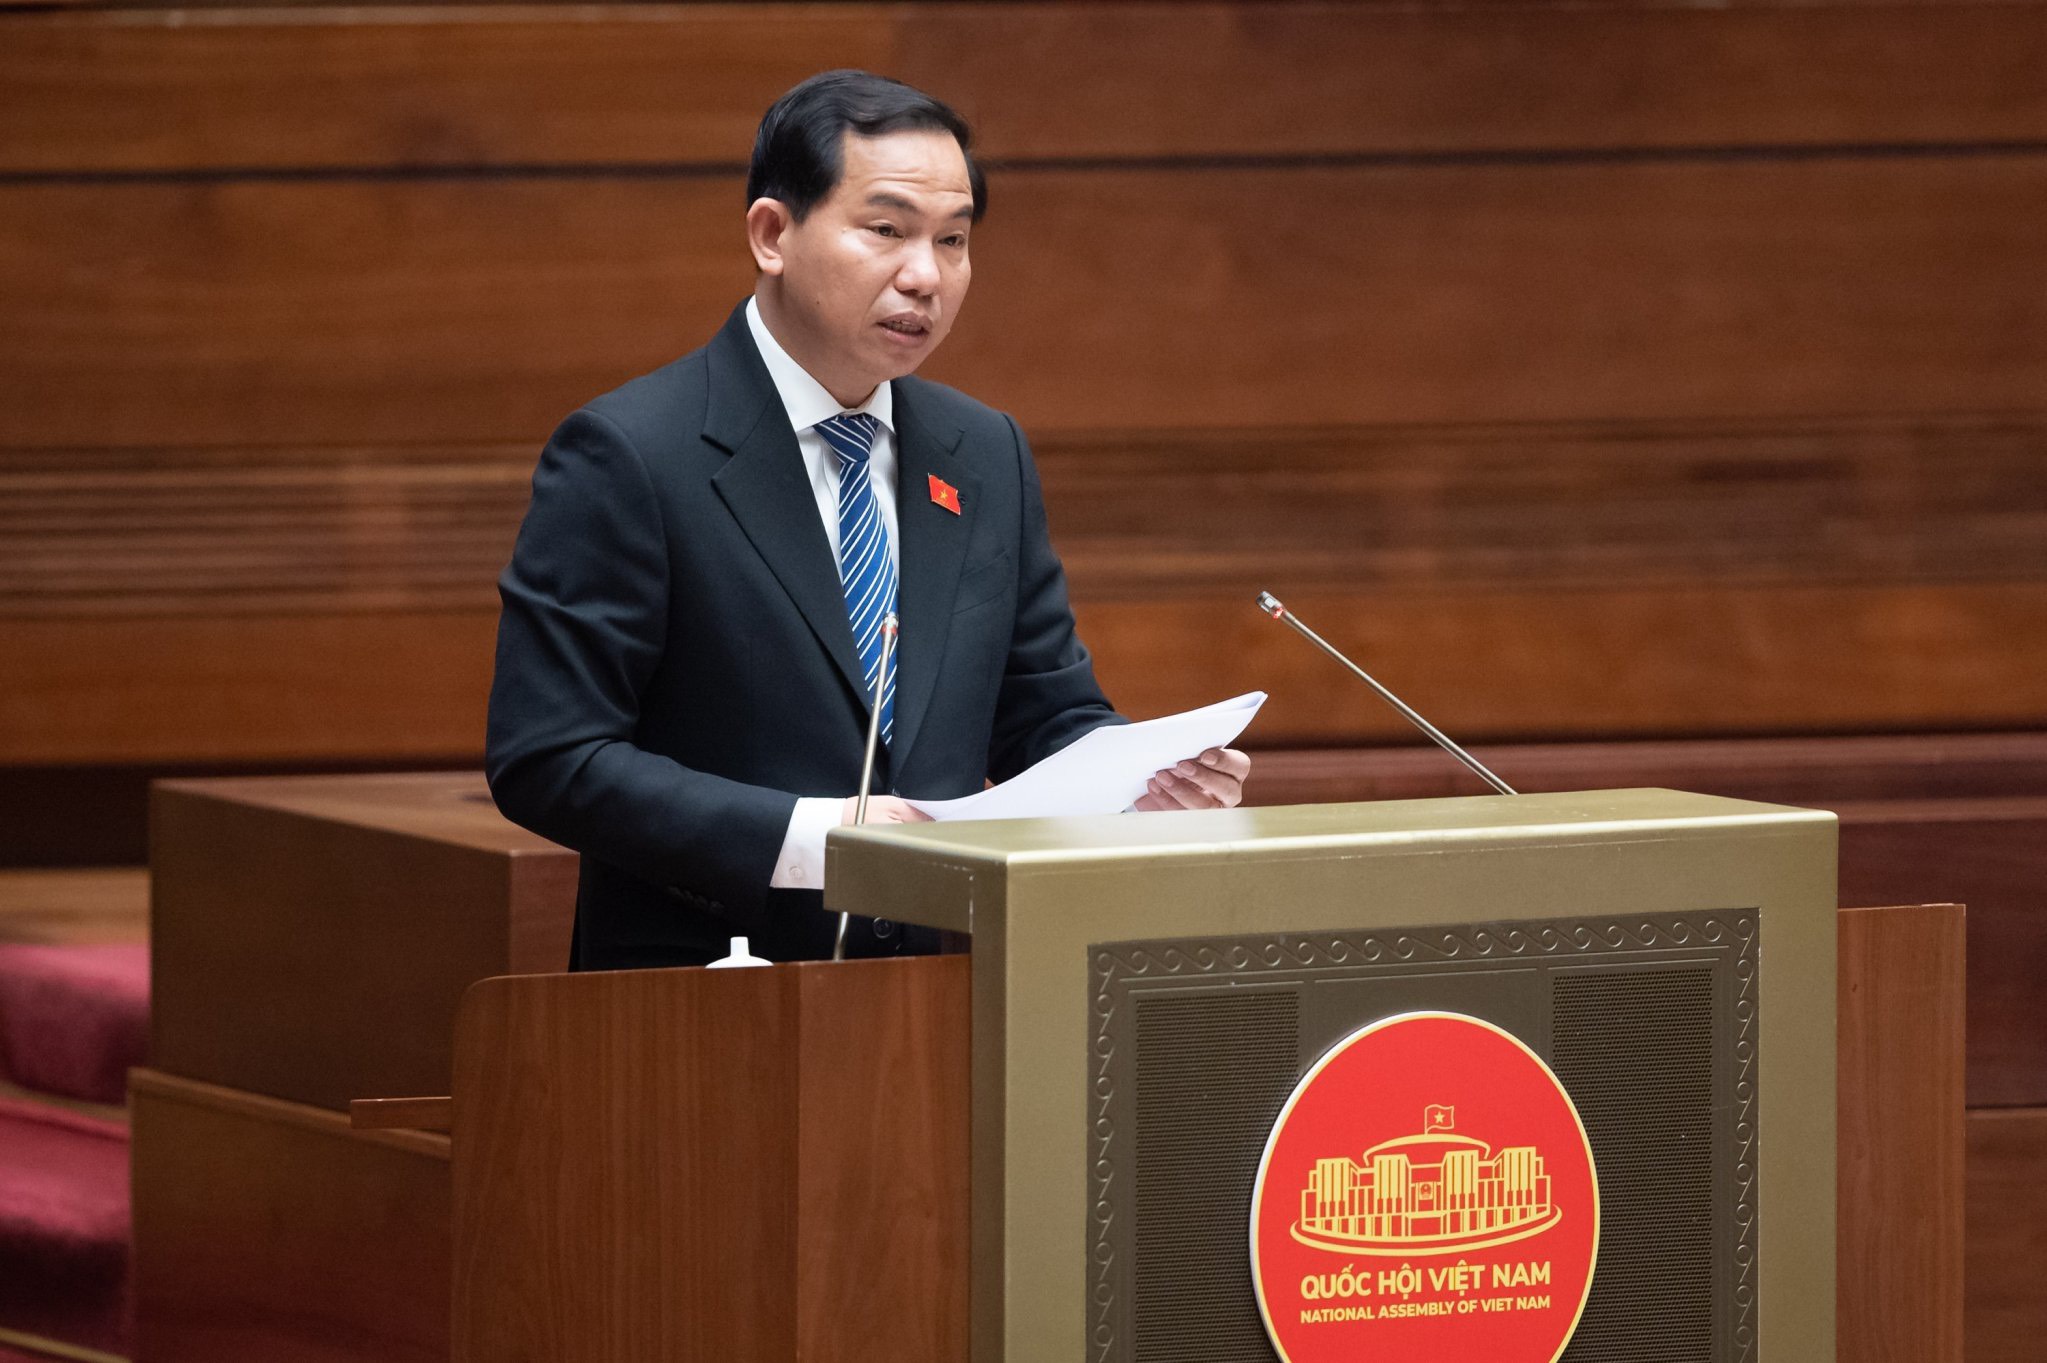 Chủ nhiệm Ủy ban Tài chính, Ngân sách của Quốc hội Lê Quang Mạnh trình bày Báo cáo thẩm tra về việc tiếp tục thực hiện chính sách giảm thuế giá trị gia tăng 2% theo Nghị quyết số 43/2022/QH15 ngày 11/01/2022